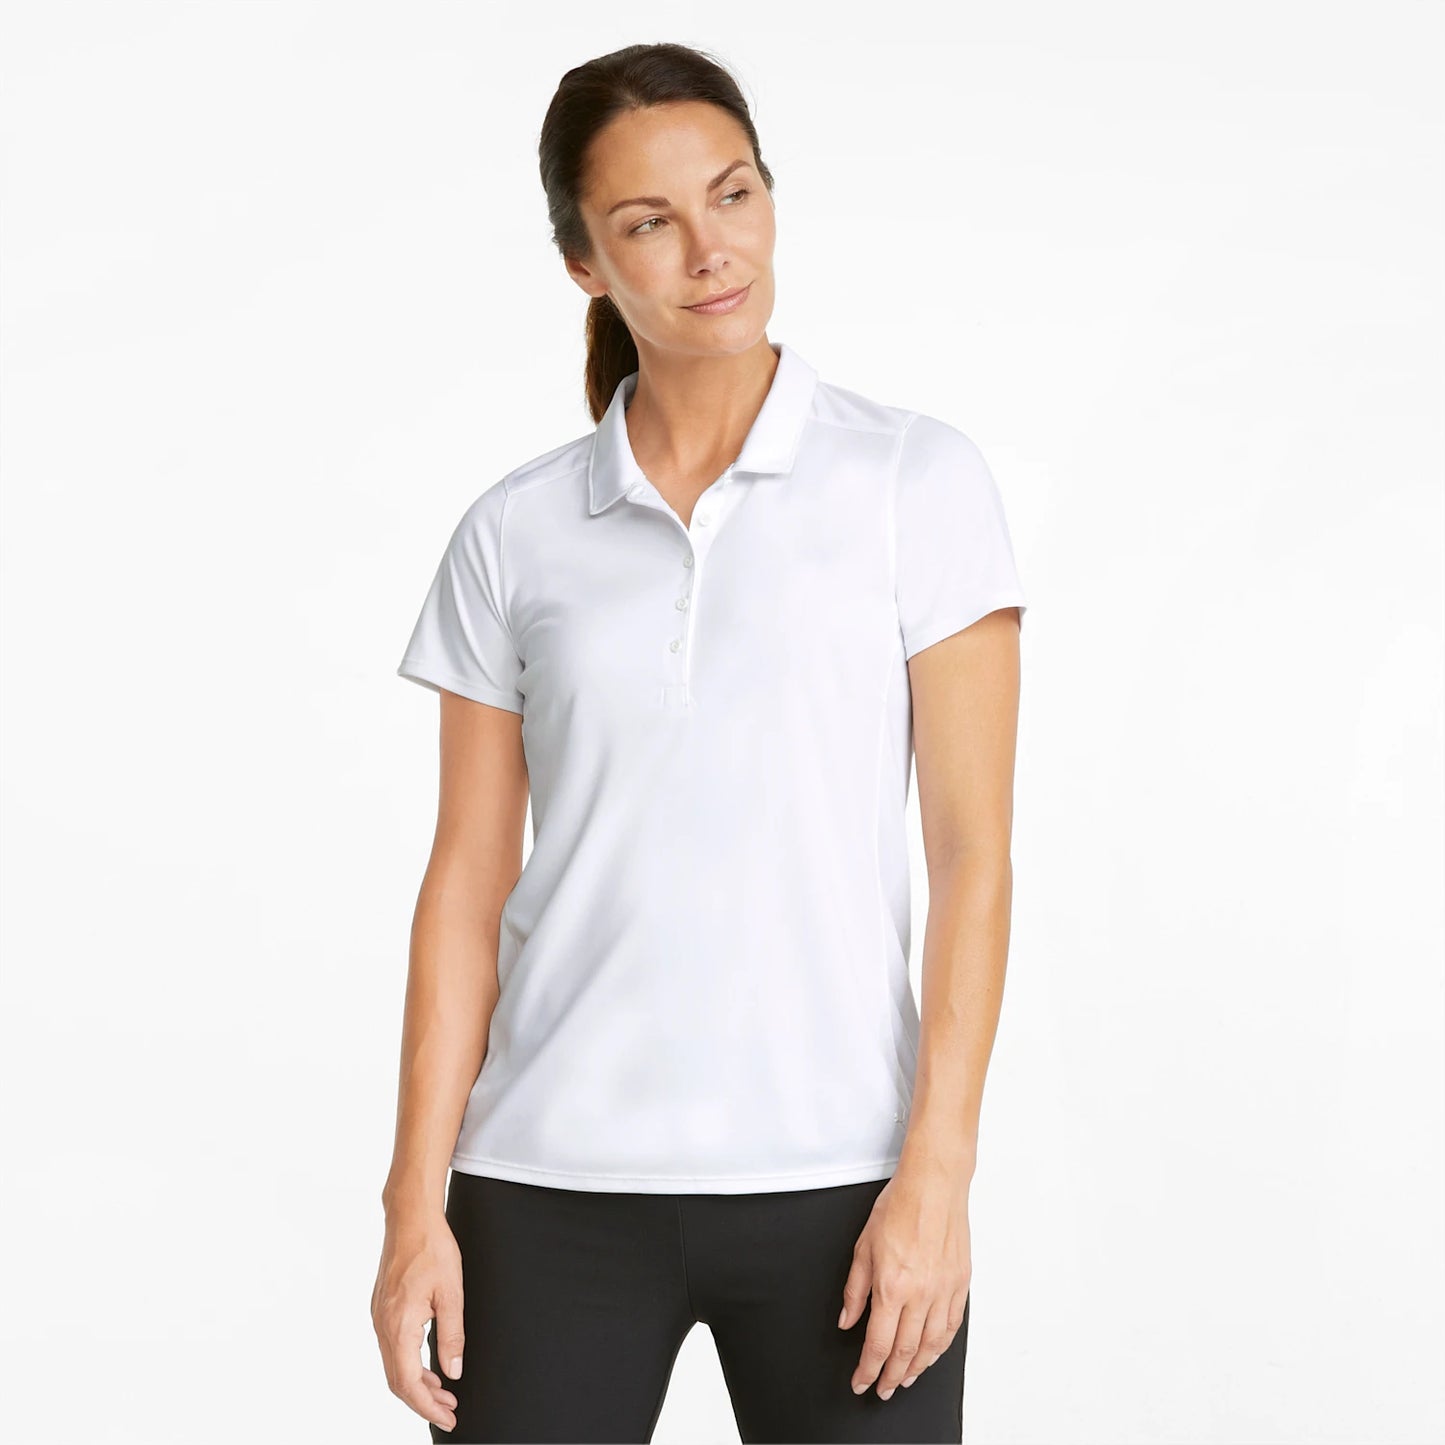 Gamer Women's Golf Polo Shirt